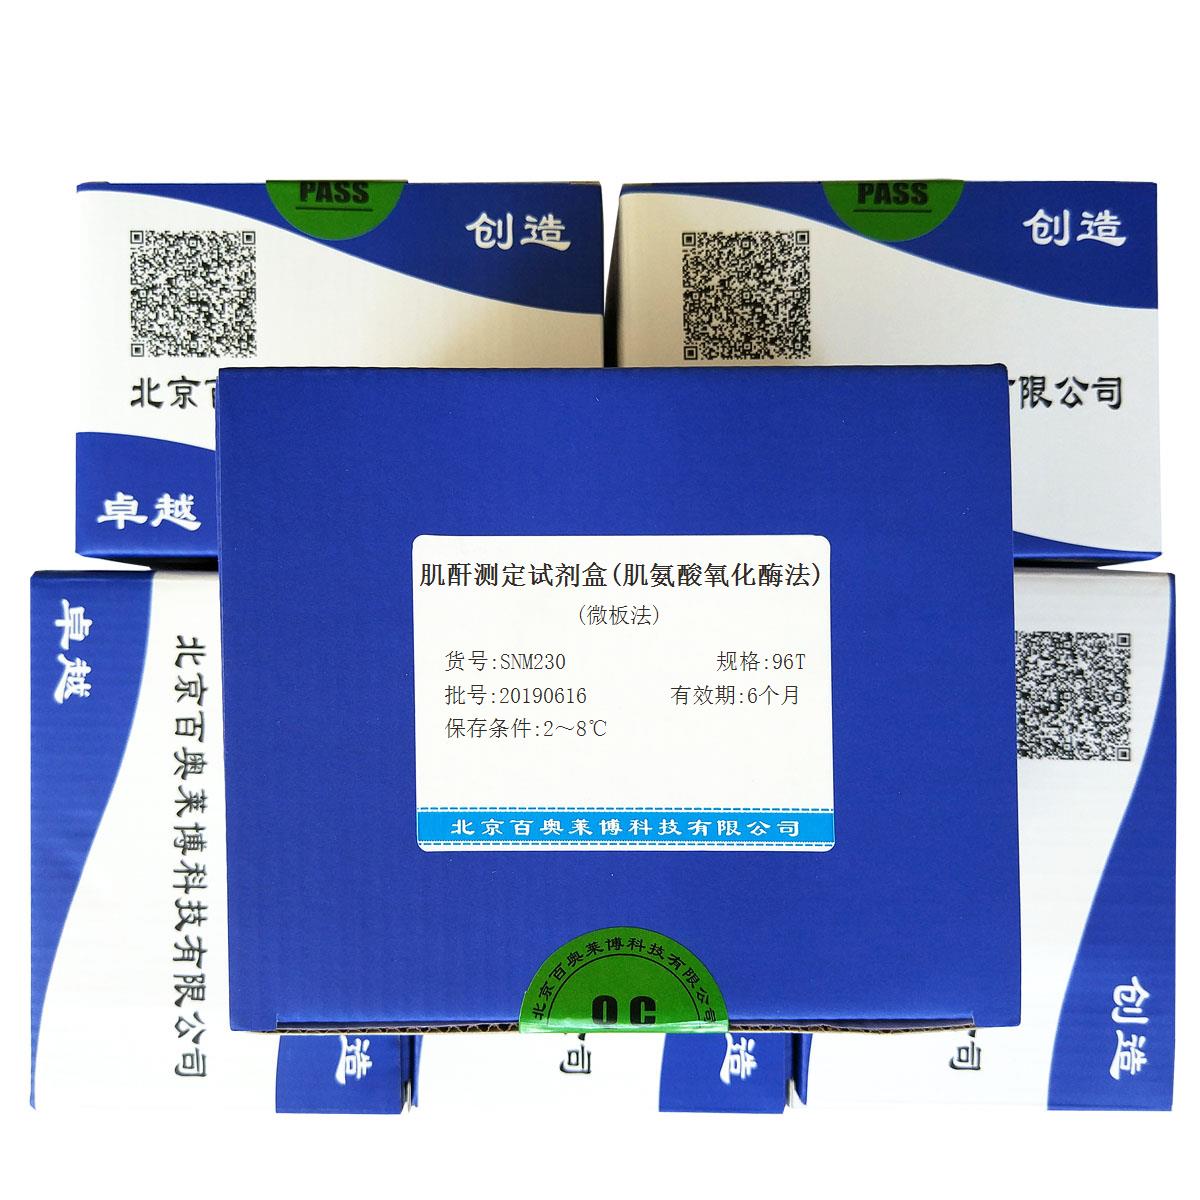 肌酐测定试剂盒(肌氨酸氧化酶法)(微板法)